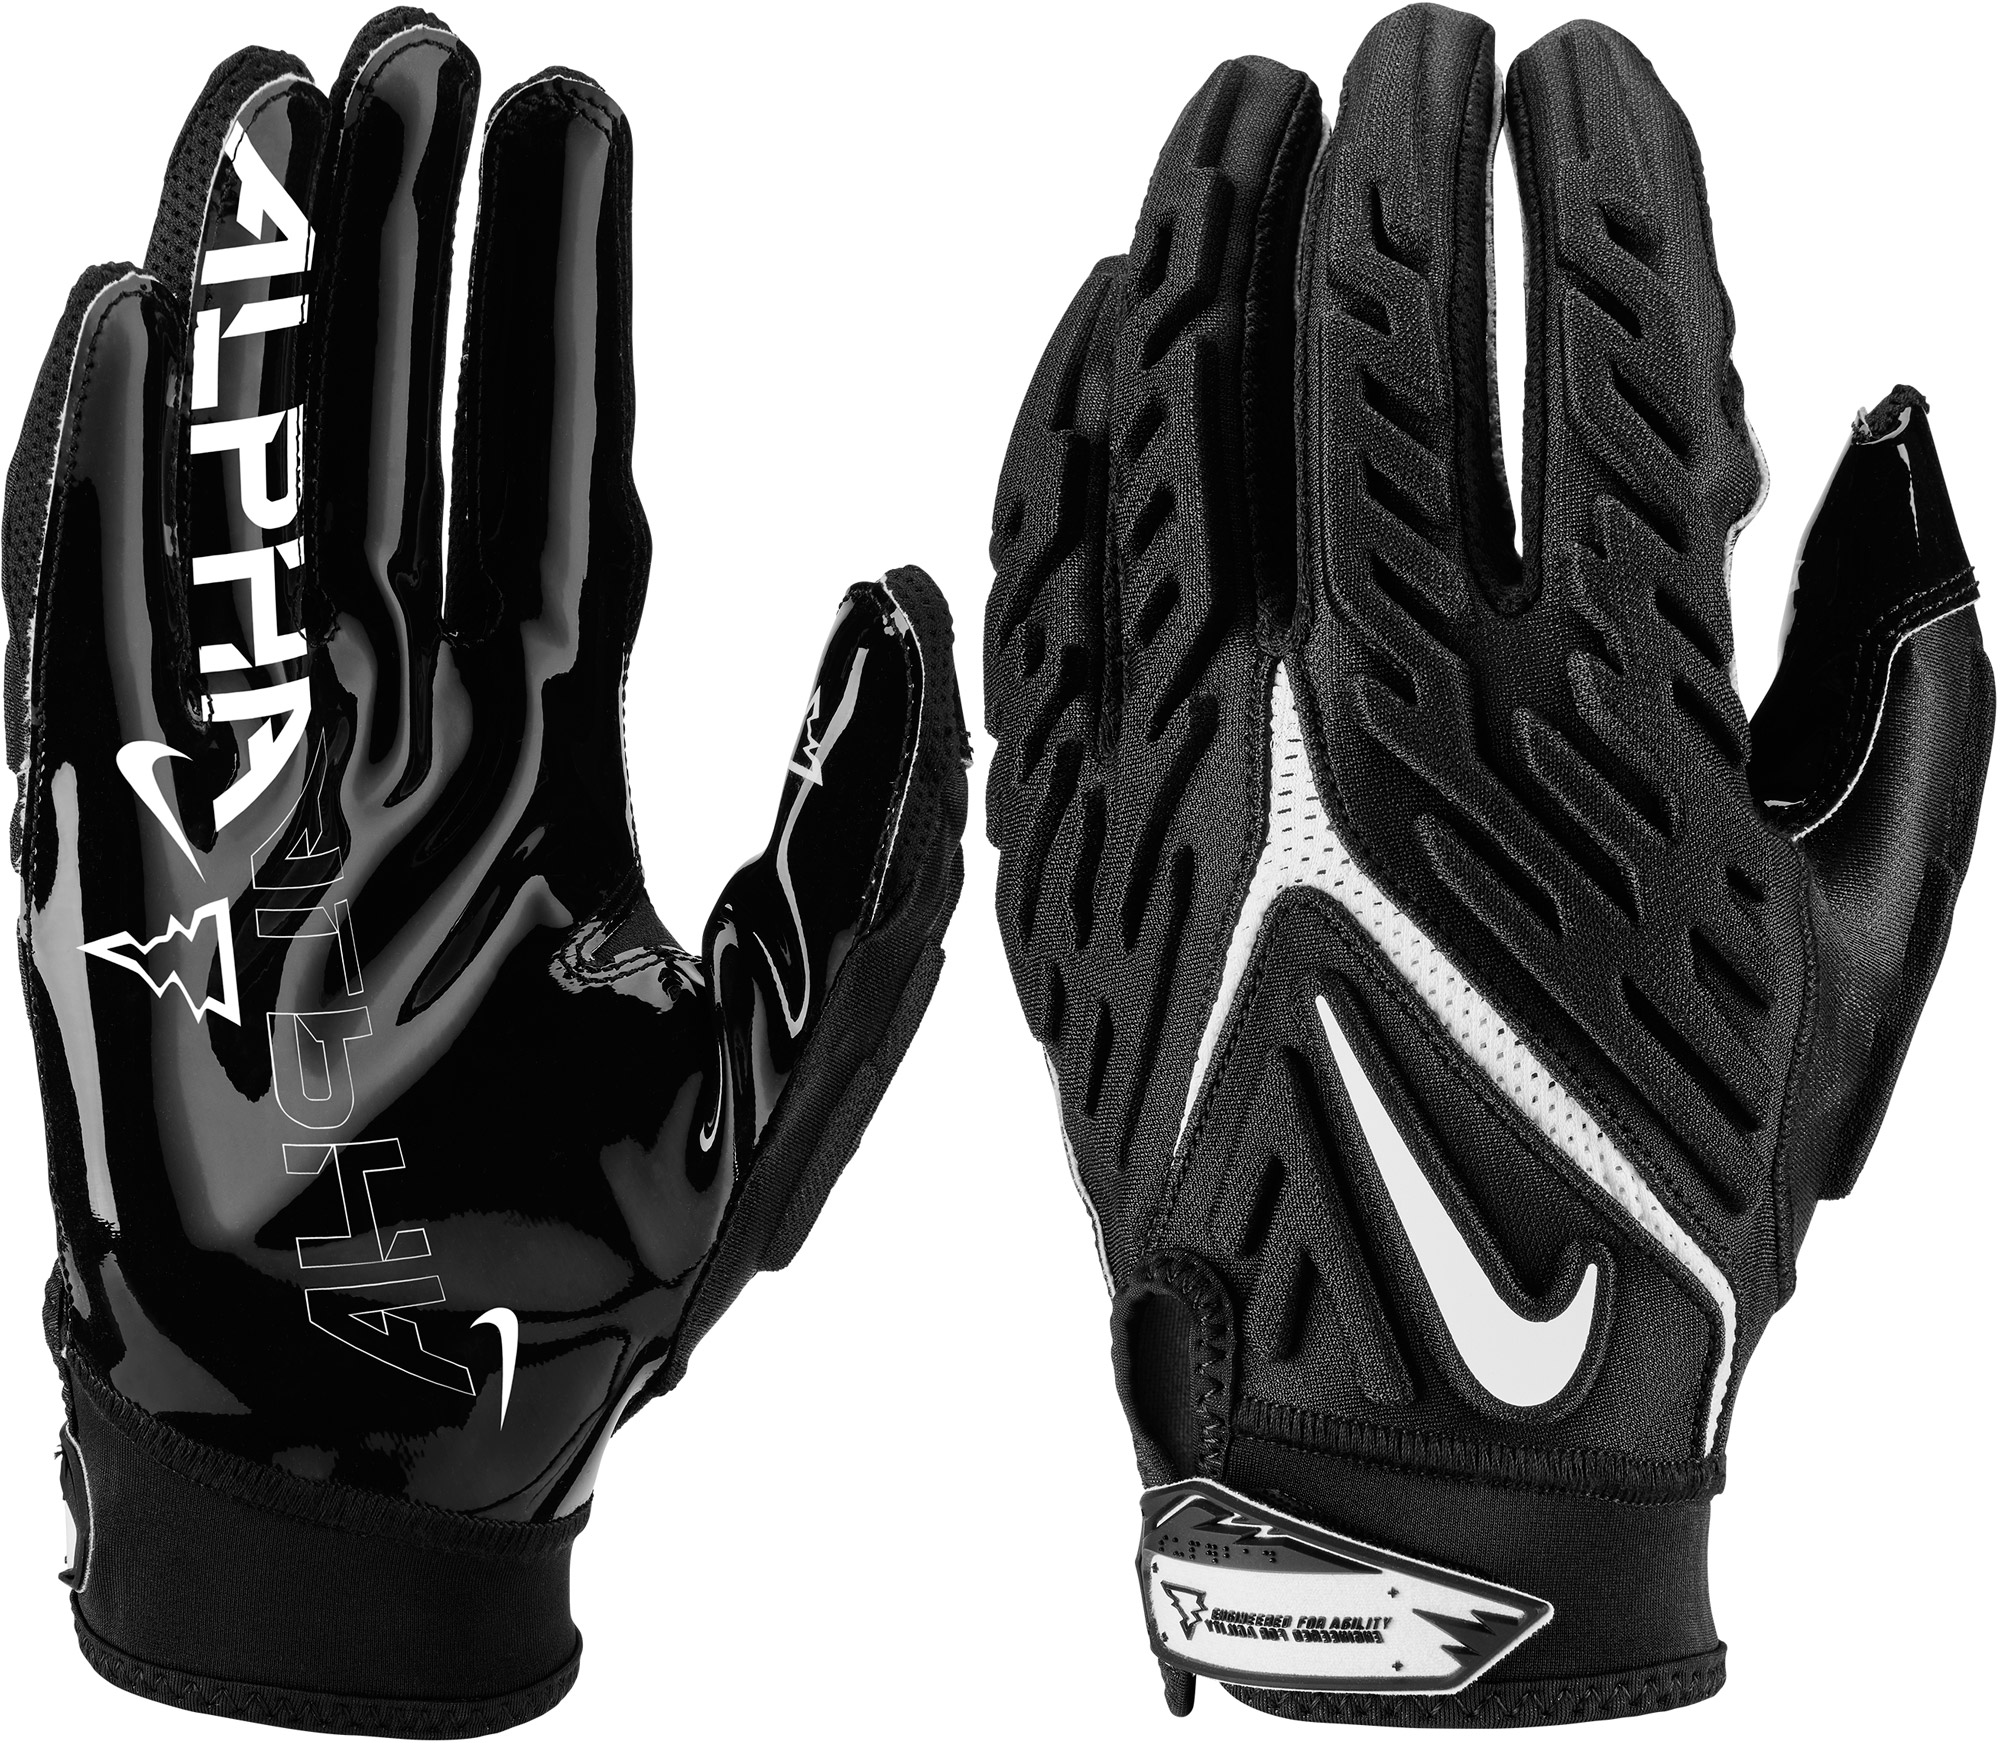 Nike Superbad 6.0 Adult Football Gloves, New | eBay